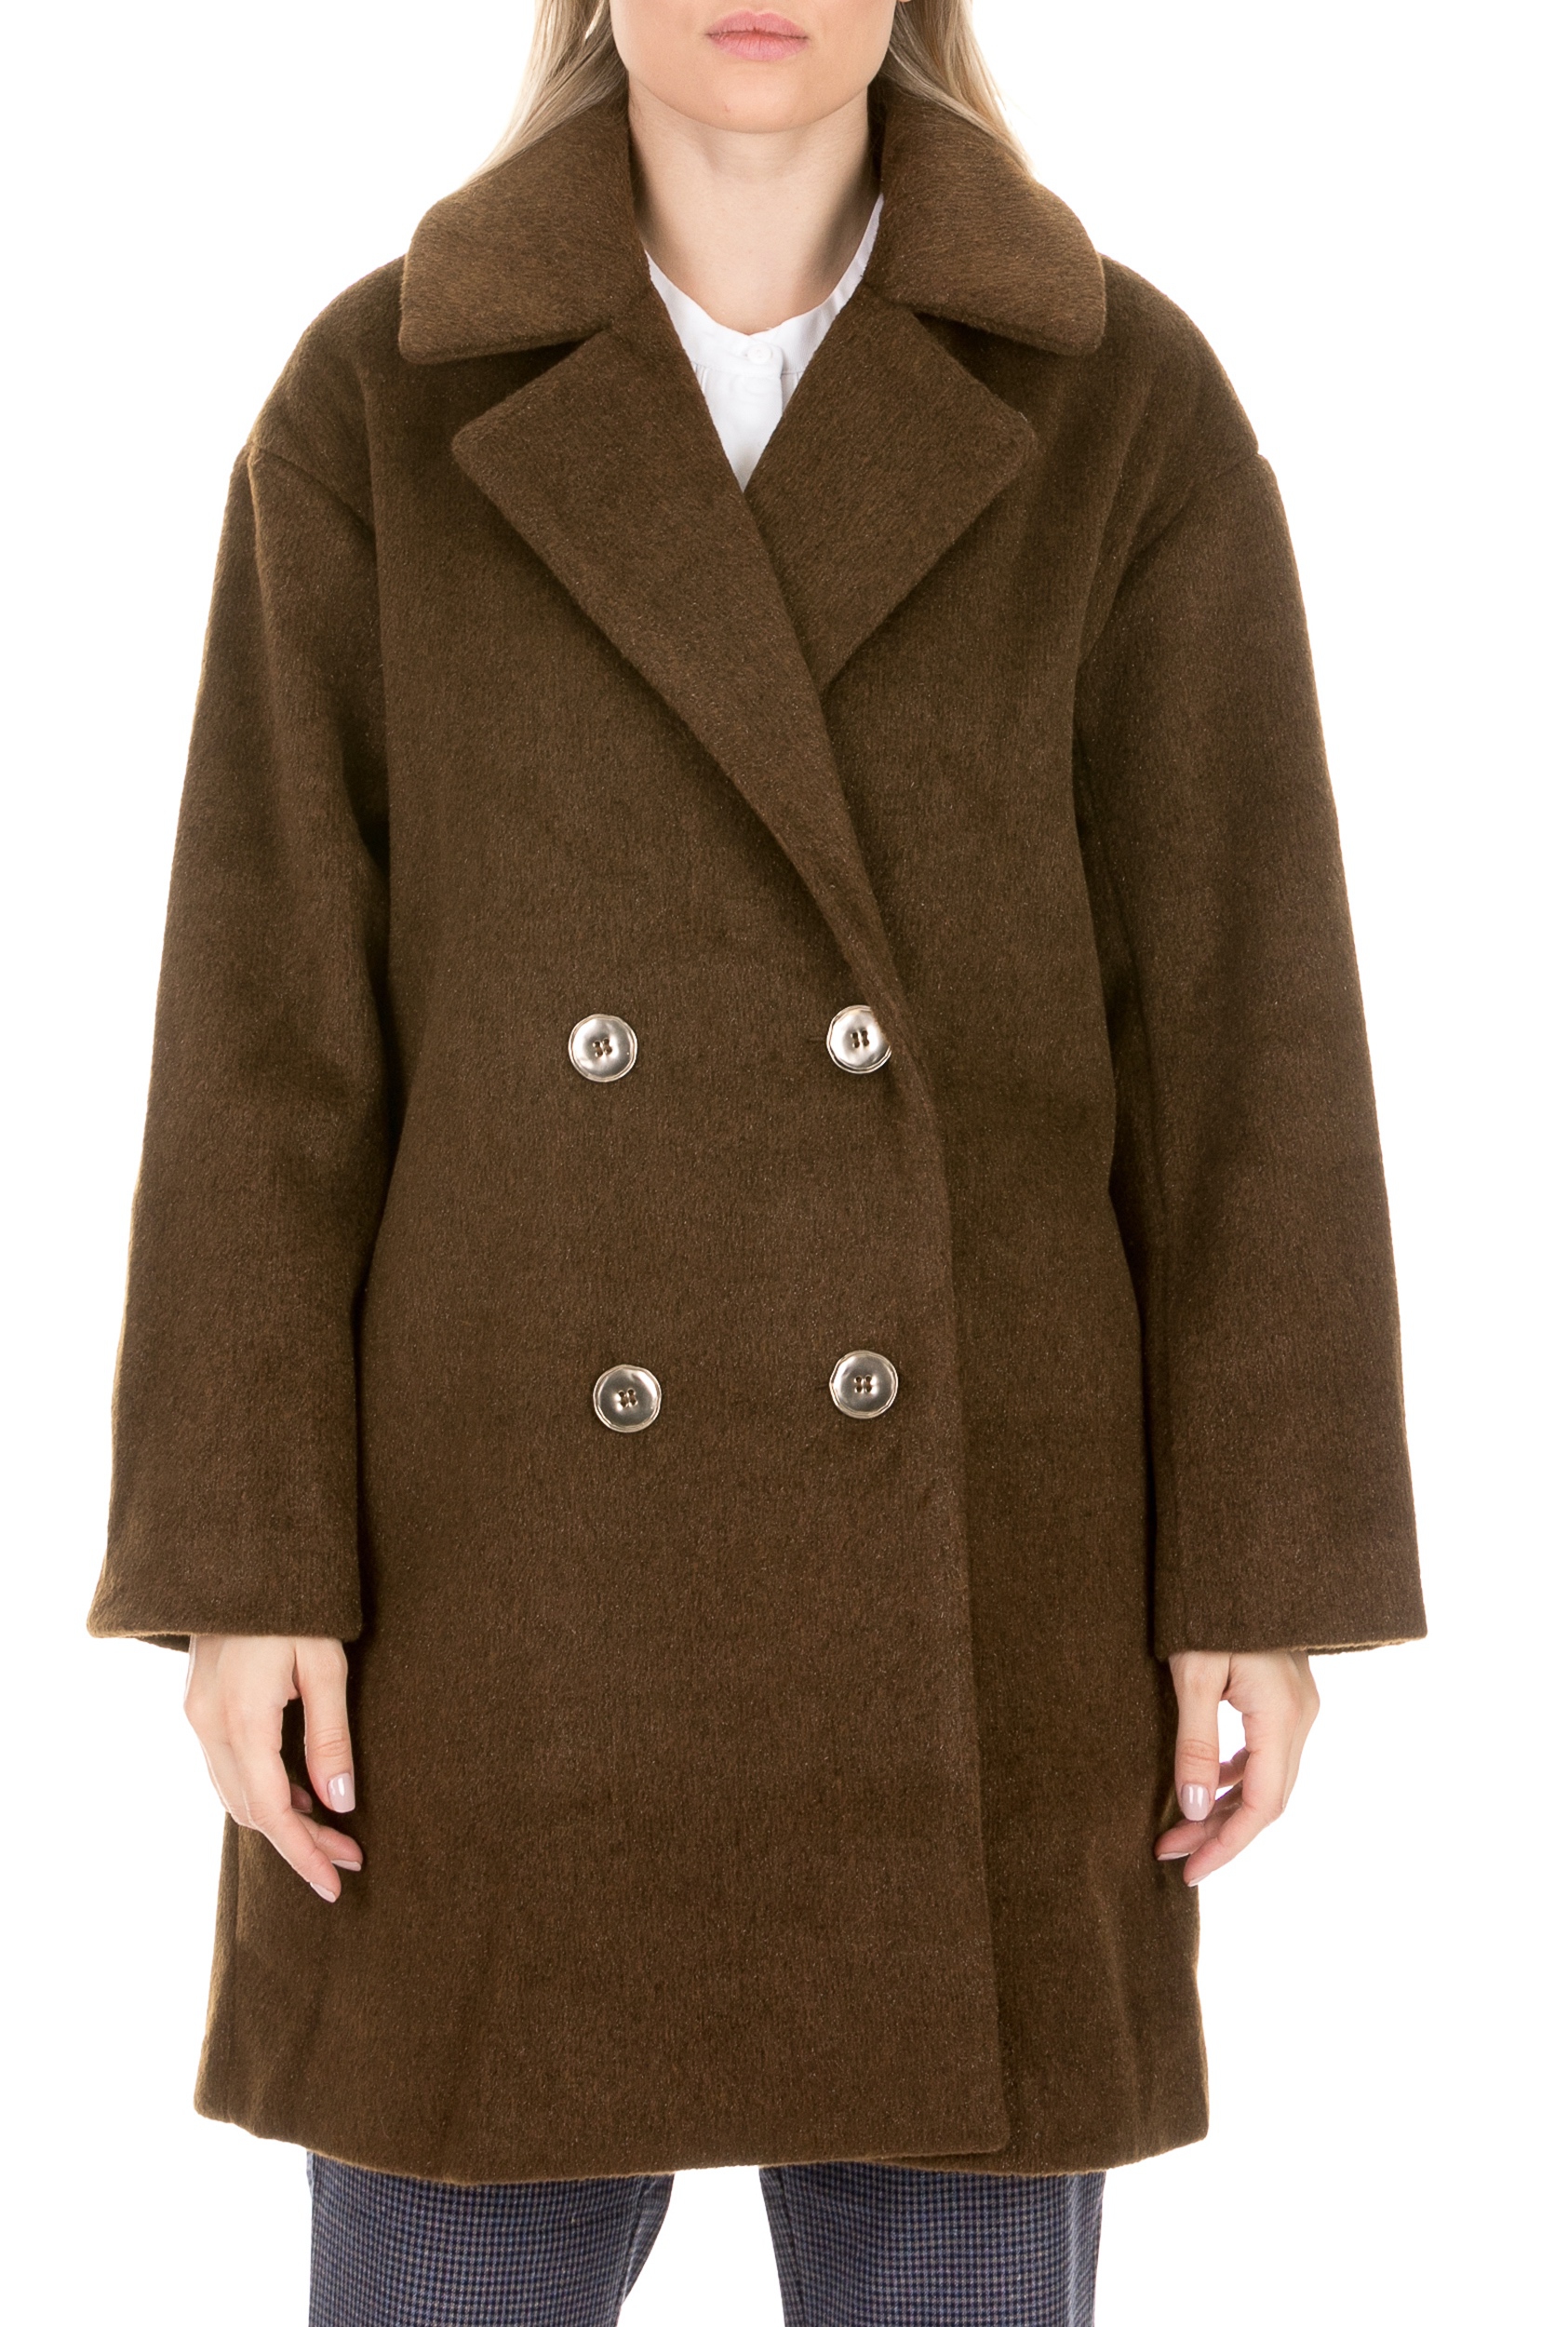 Γυναικεία/Ρούχα/Πανωφόρια/Παλτό MOLLY BRACKEN - Γυναικείο παλτό MOLLY BRACKEN χακί